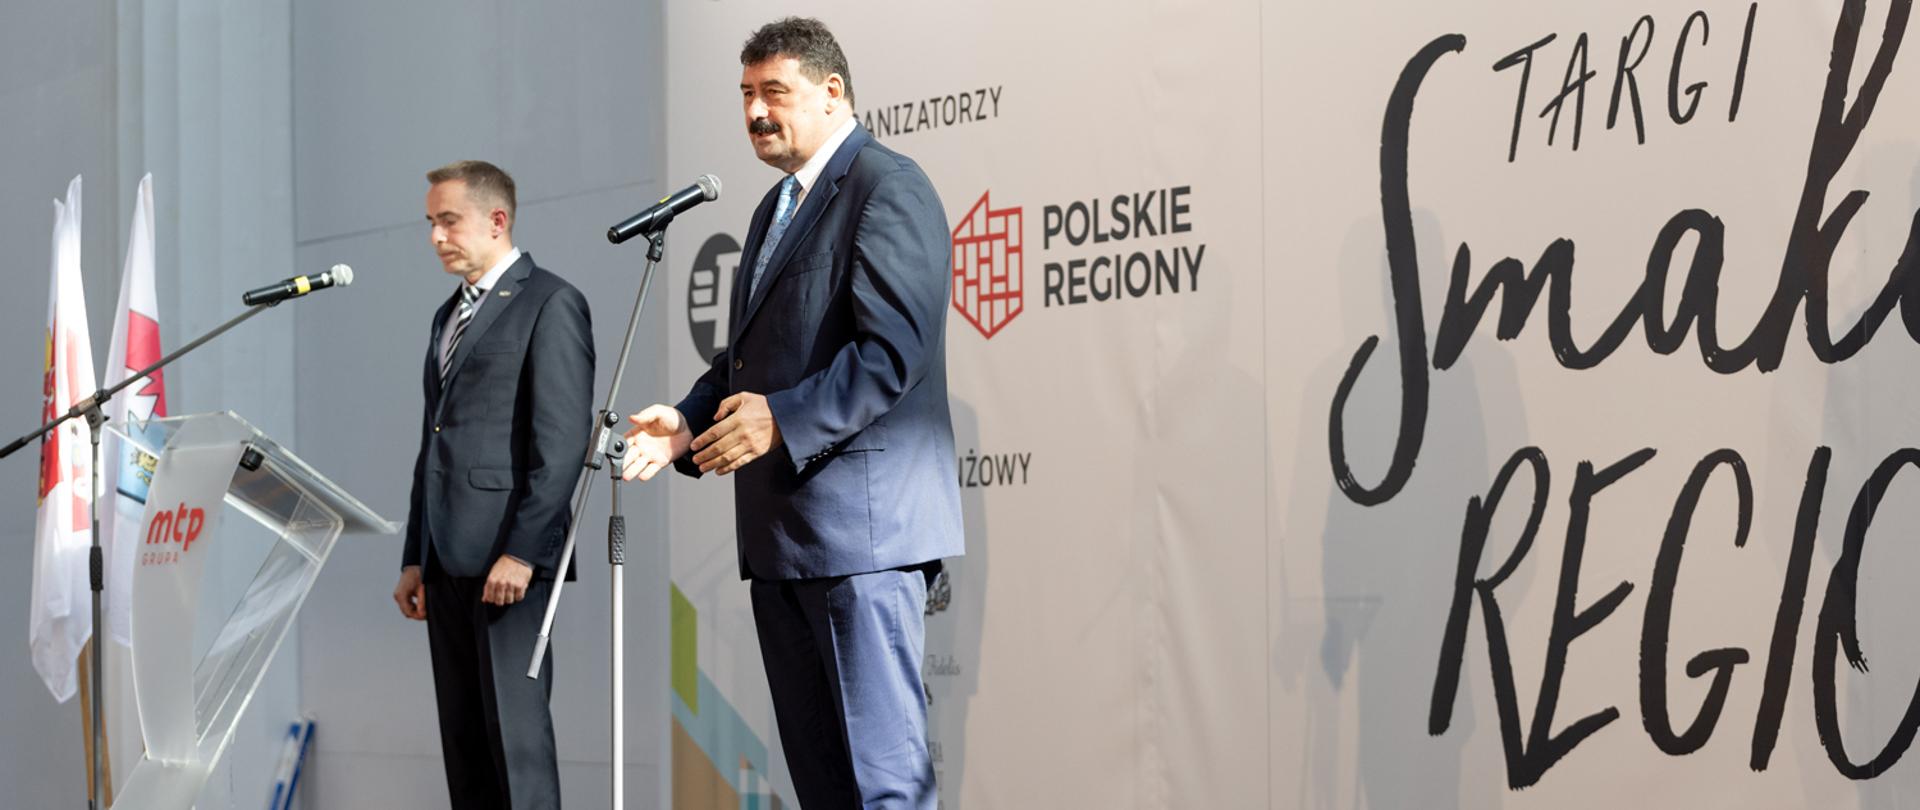 Sekretarz stanu Ryszard Bartosik, stojący przy mikrofonie podczas przemowy.